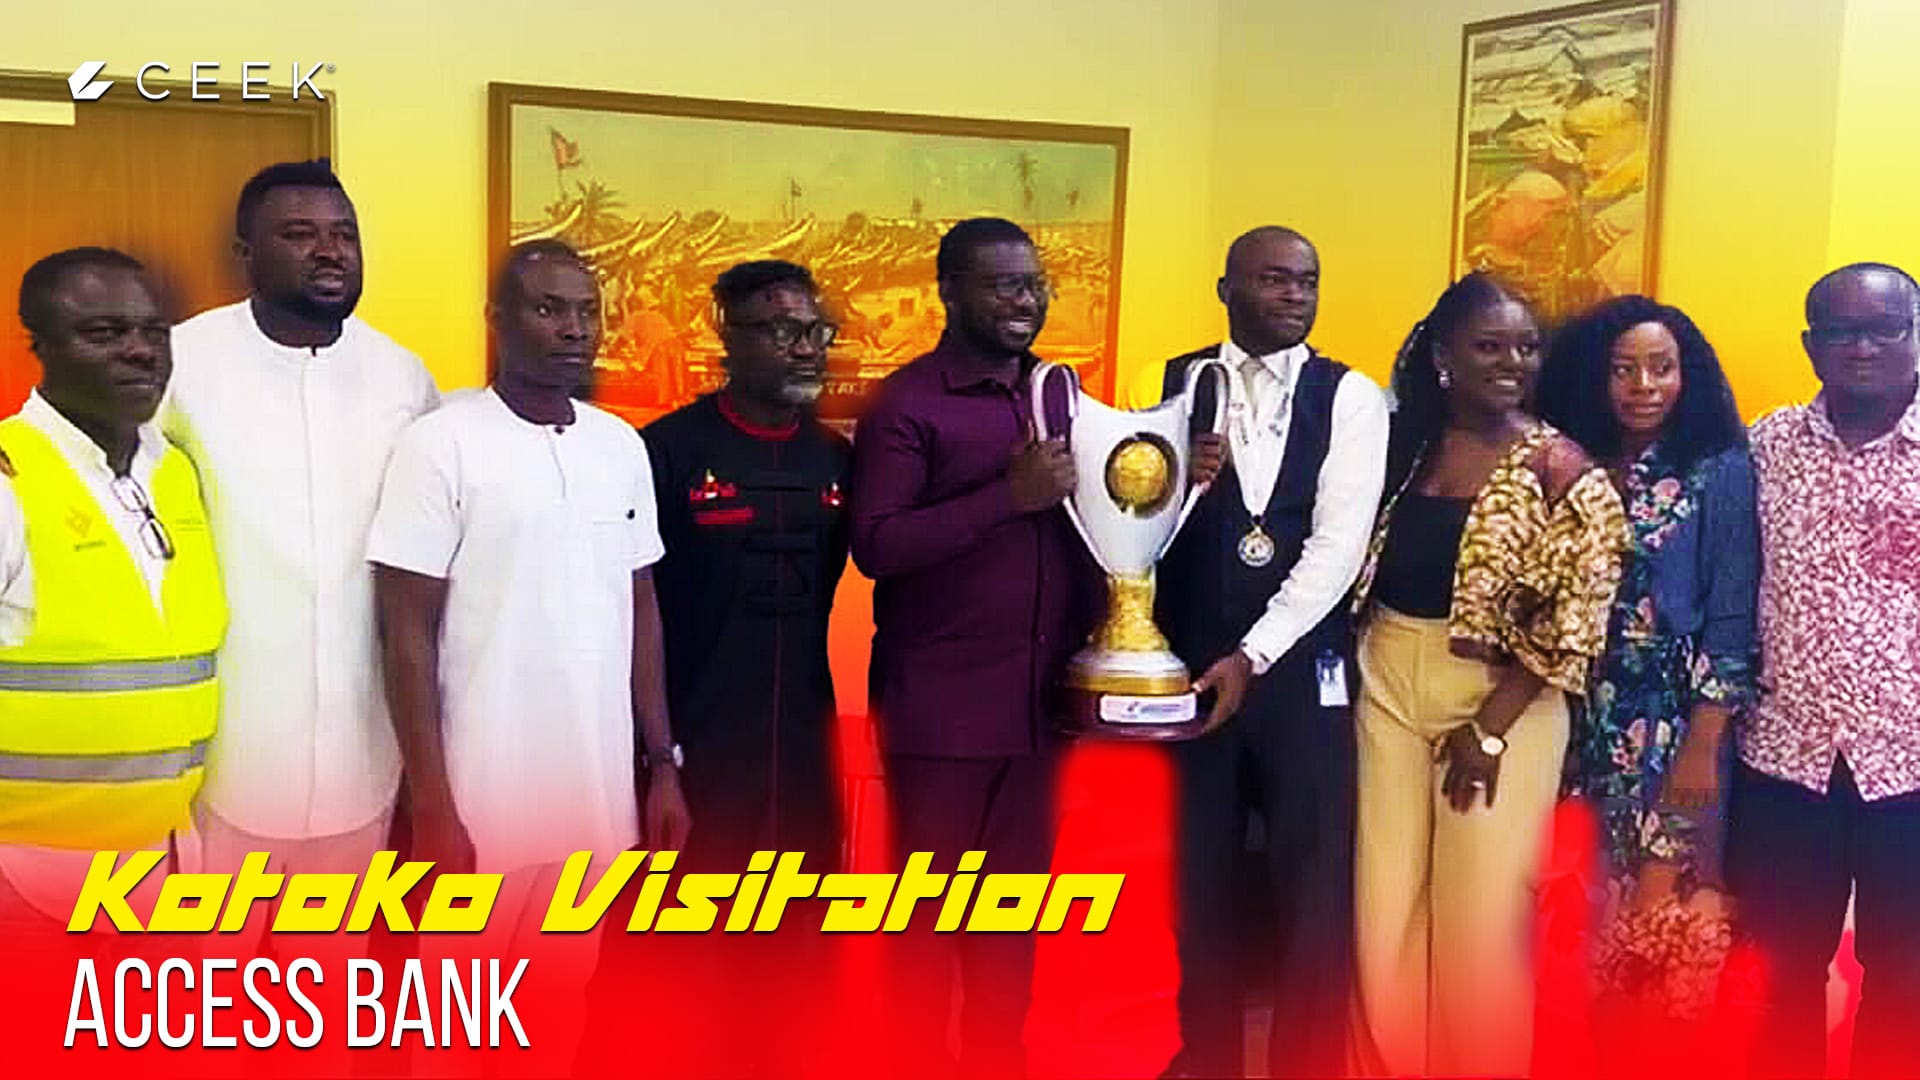 Asante Kotoko Asante Kotoko Visitation: Access Bank